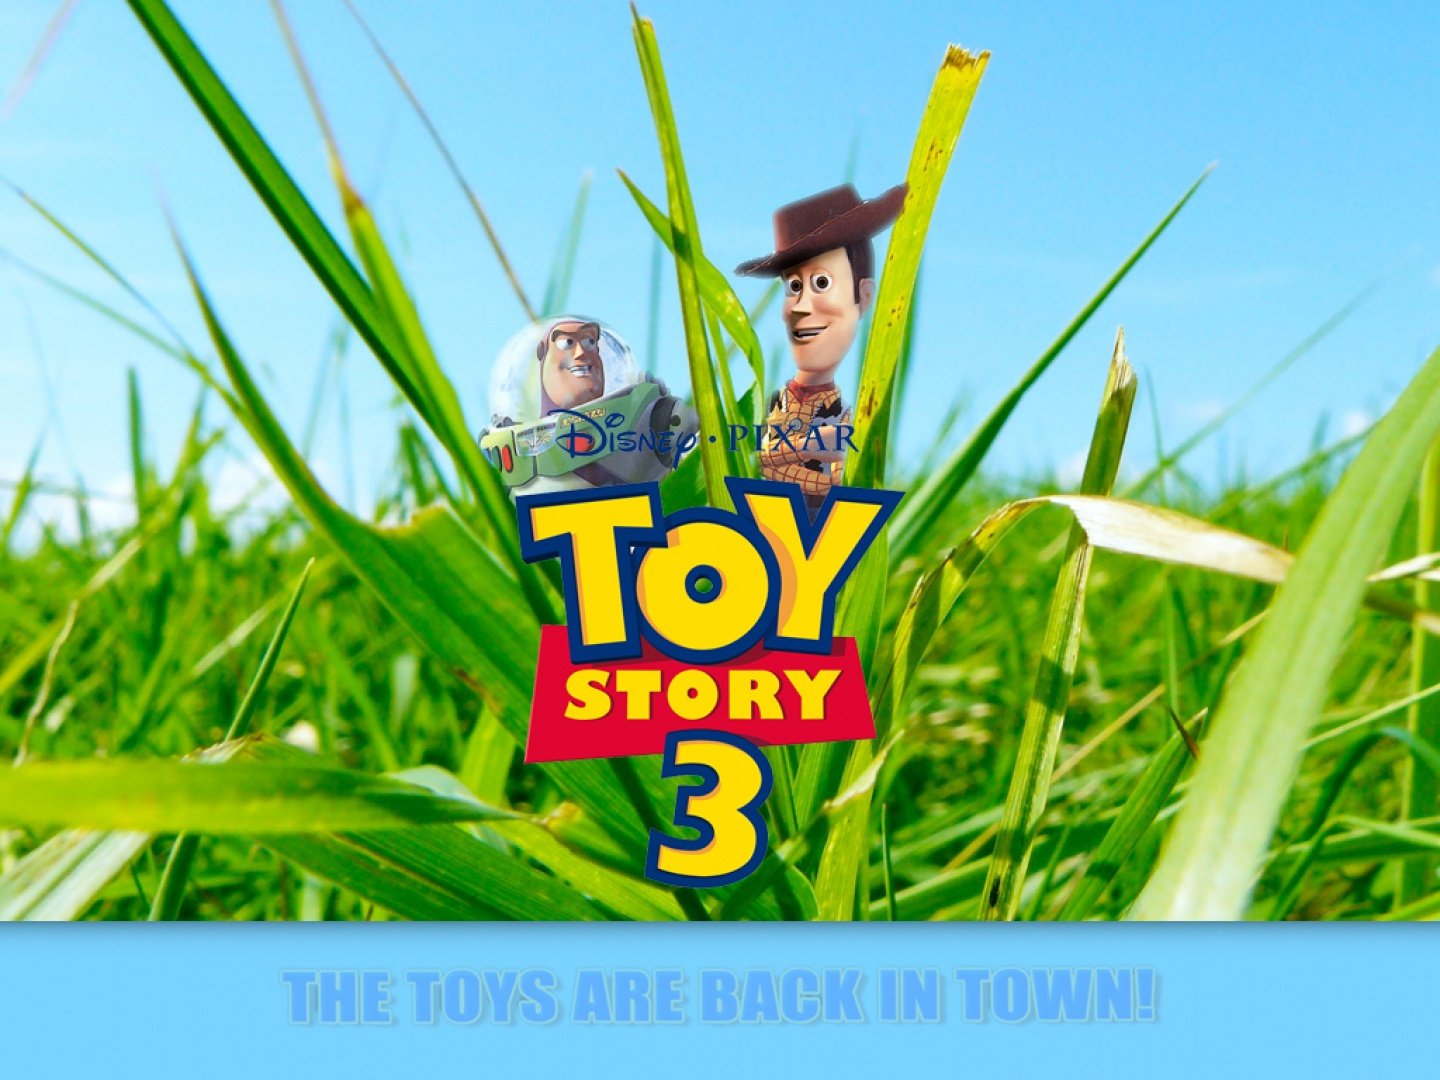 Fondos de Toy Story 3 Fondos de pantalla de Toy Story 3   Cine y TV 1440x1080